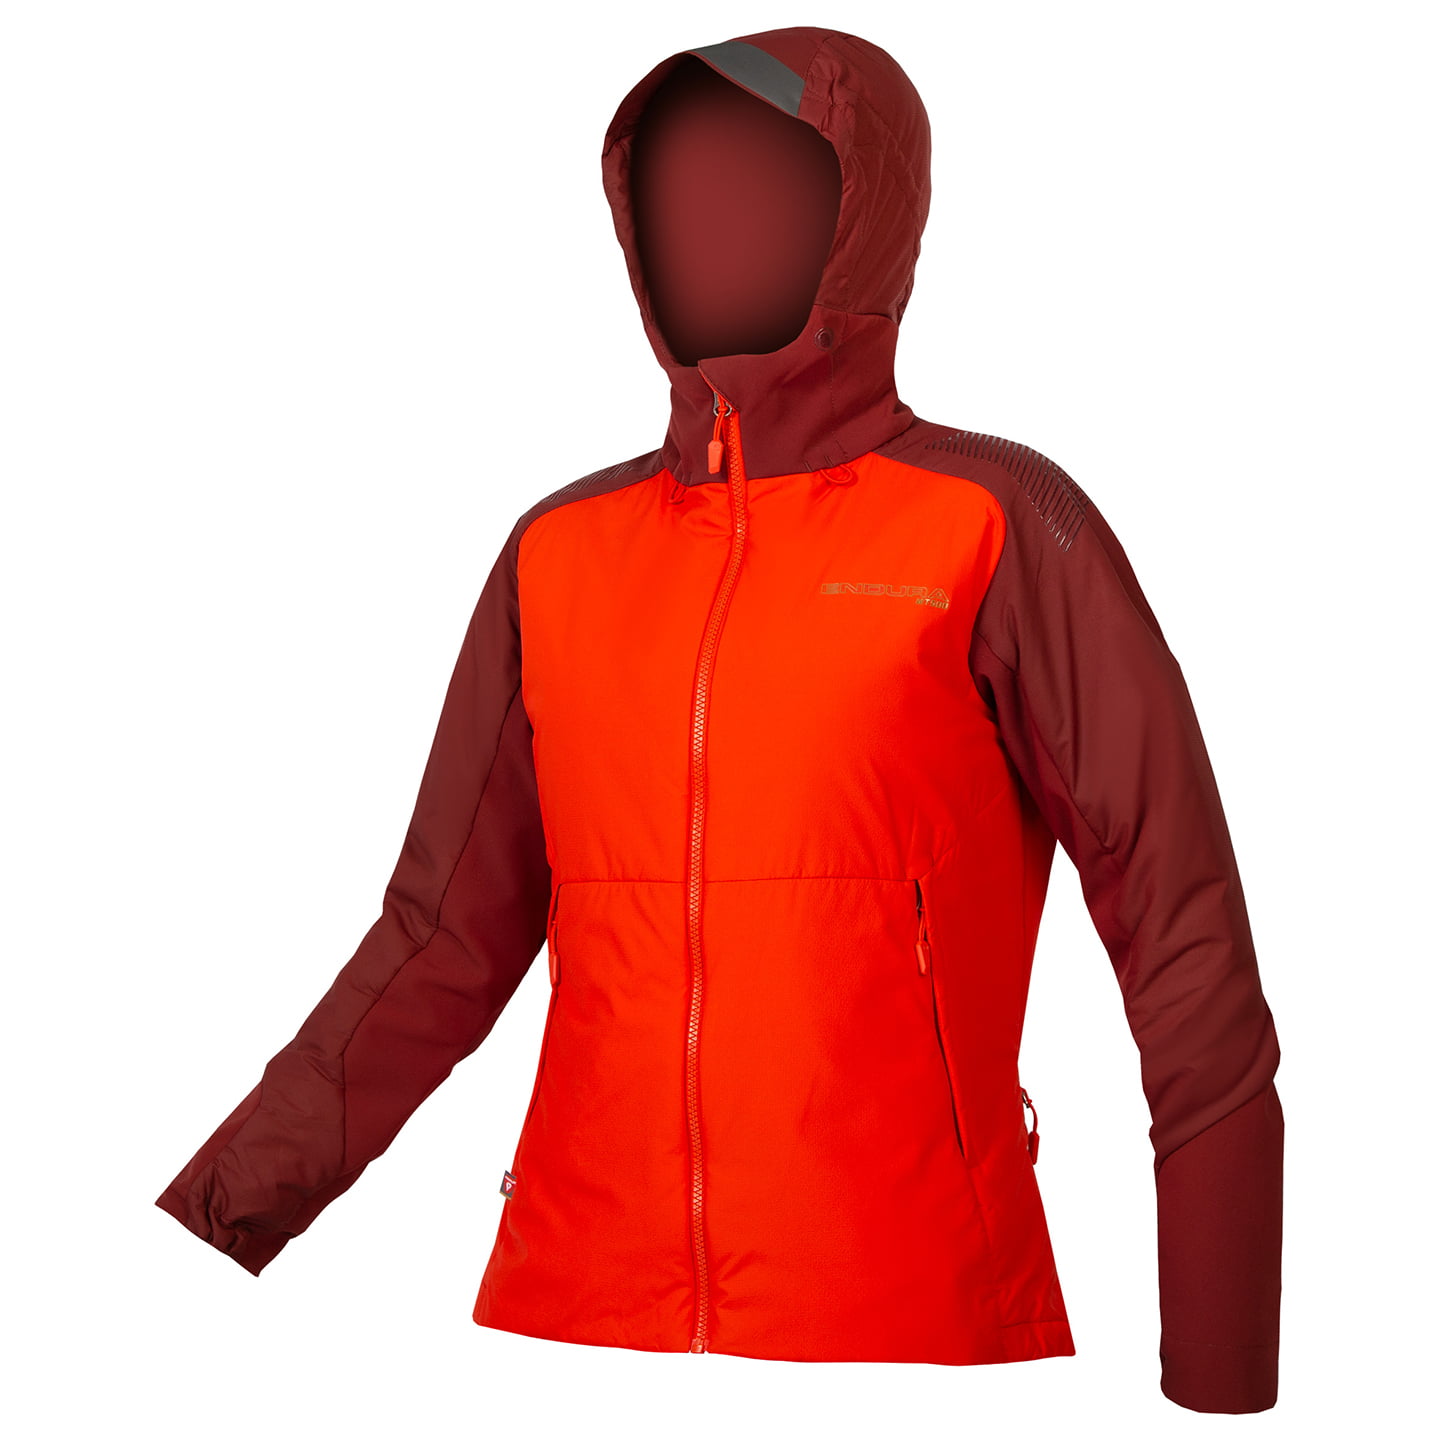 ENDURA MT500 Freezing Point Women’s Winter Jacket Women’s Thermal Jacket, size S, Winter jacket, Cycle clothing